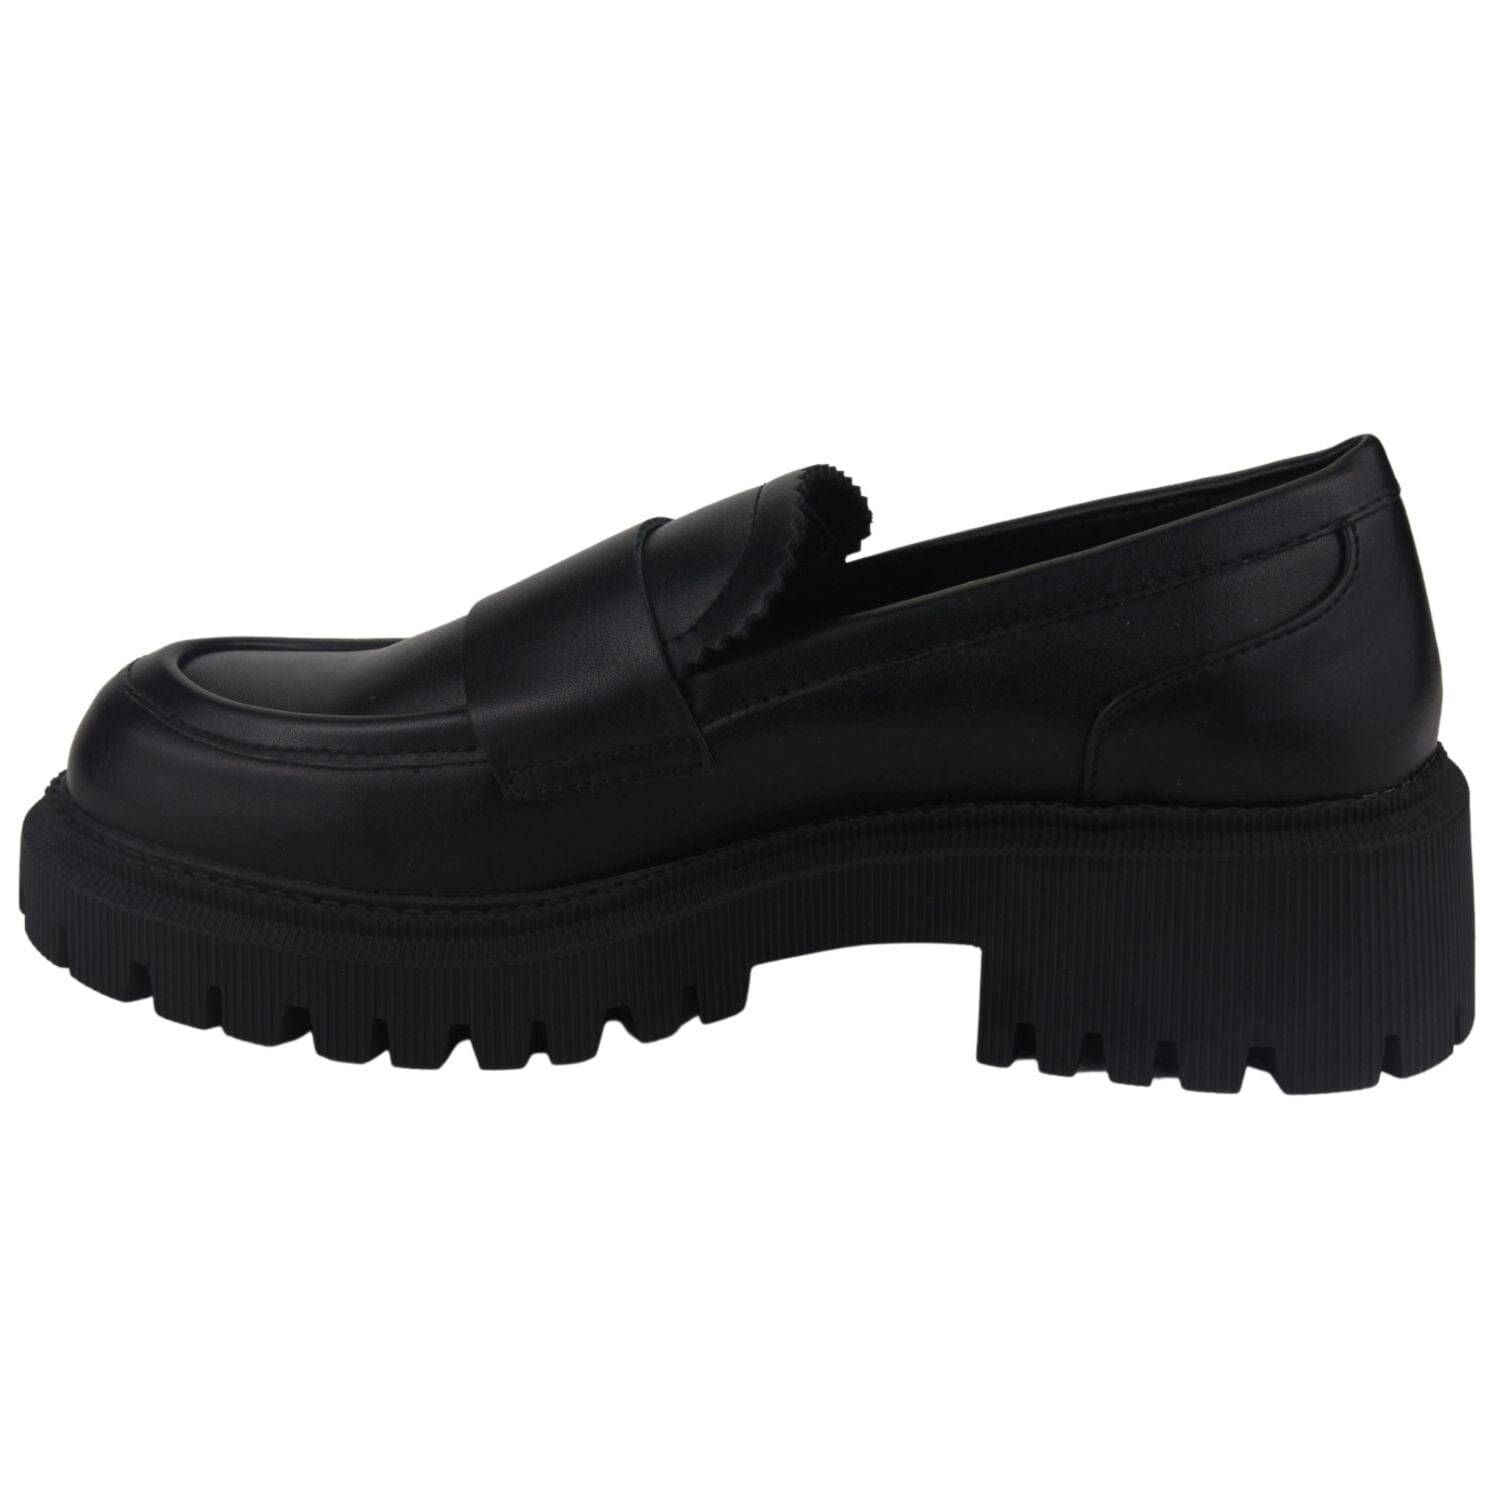 Zapato Chalada Mujer Joop-1 Negro Casual Mocasines Plataforma Chalada 